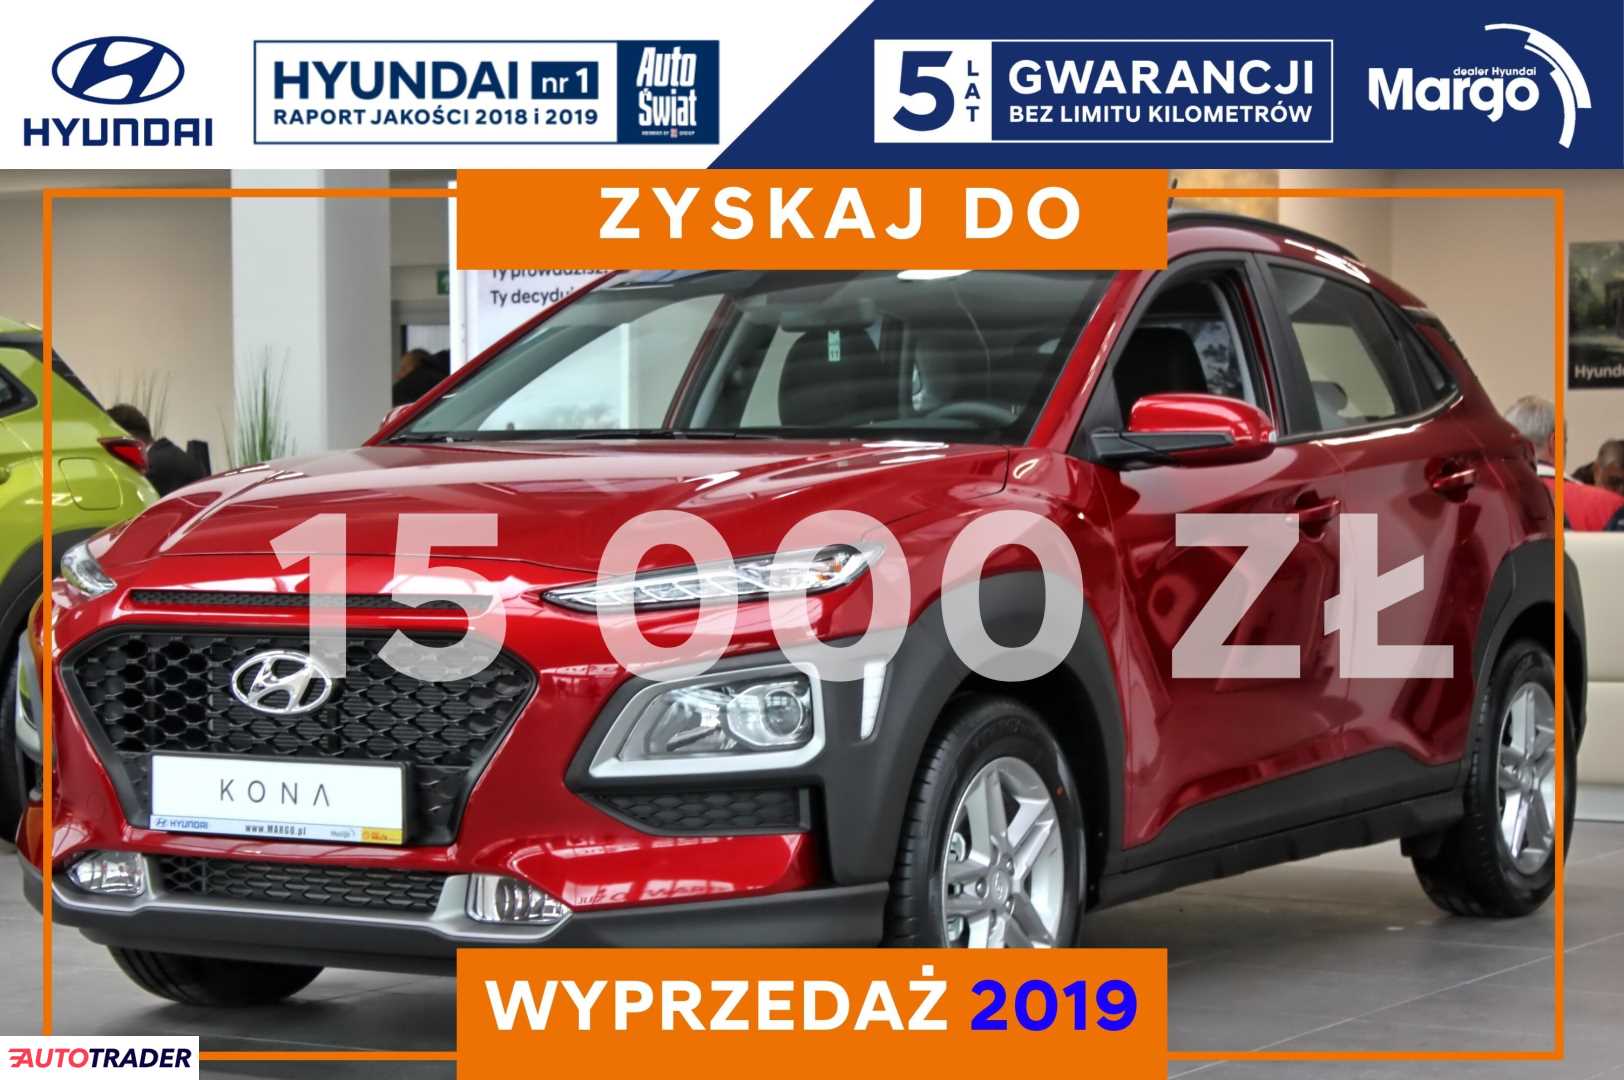 Hyundai Kona 1.0 benzyna 120 KM 2019r. (Gdańsk) archiwum